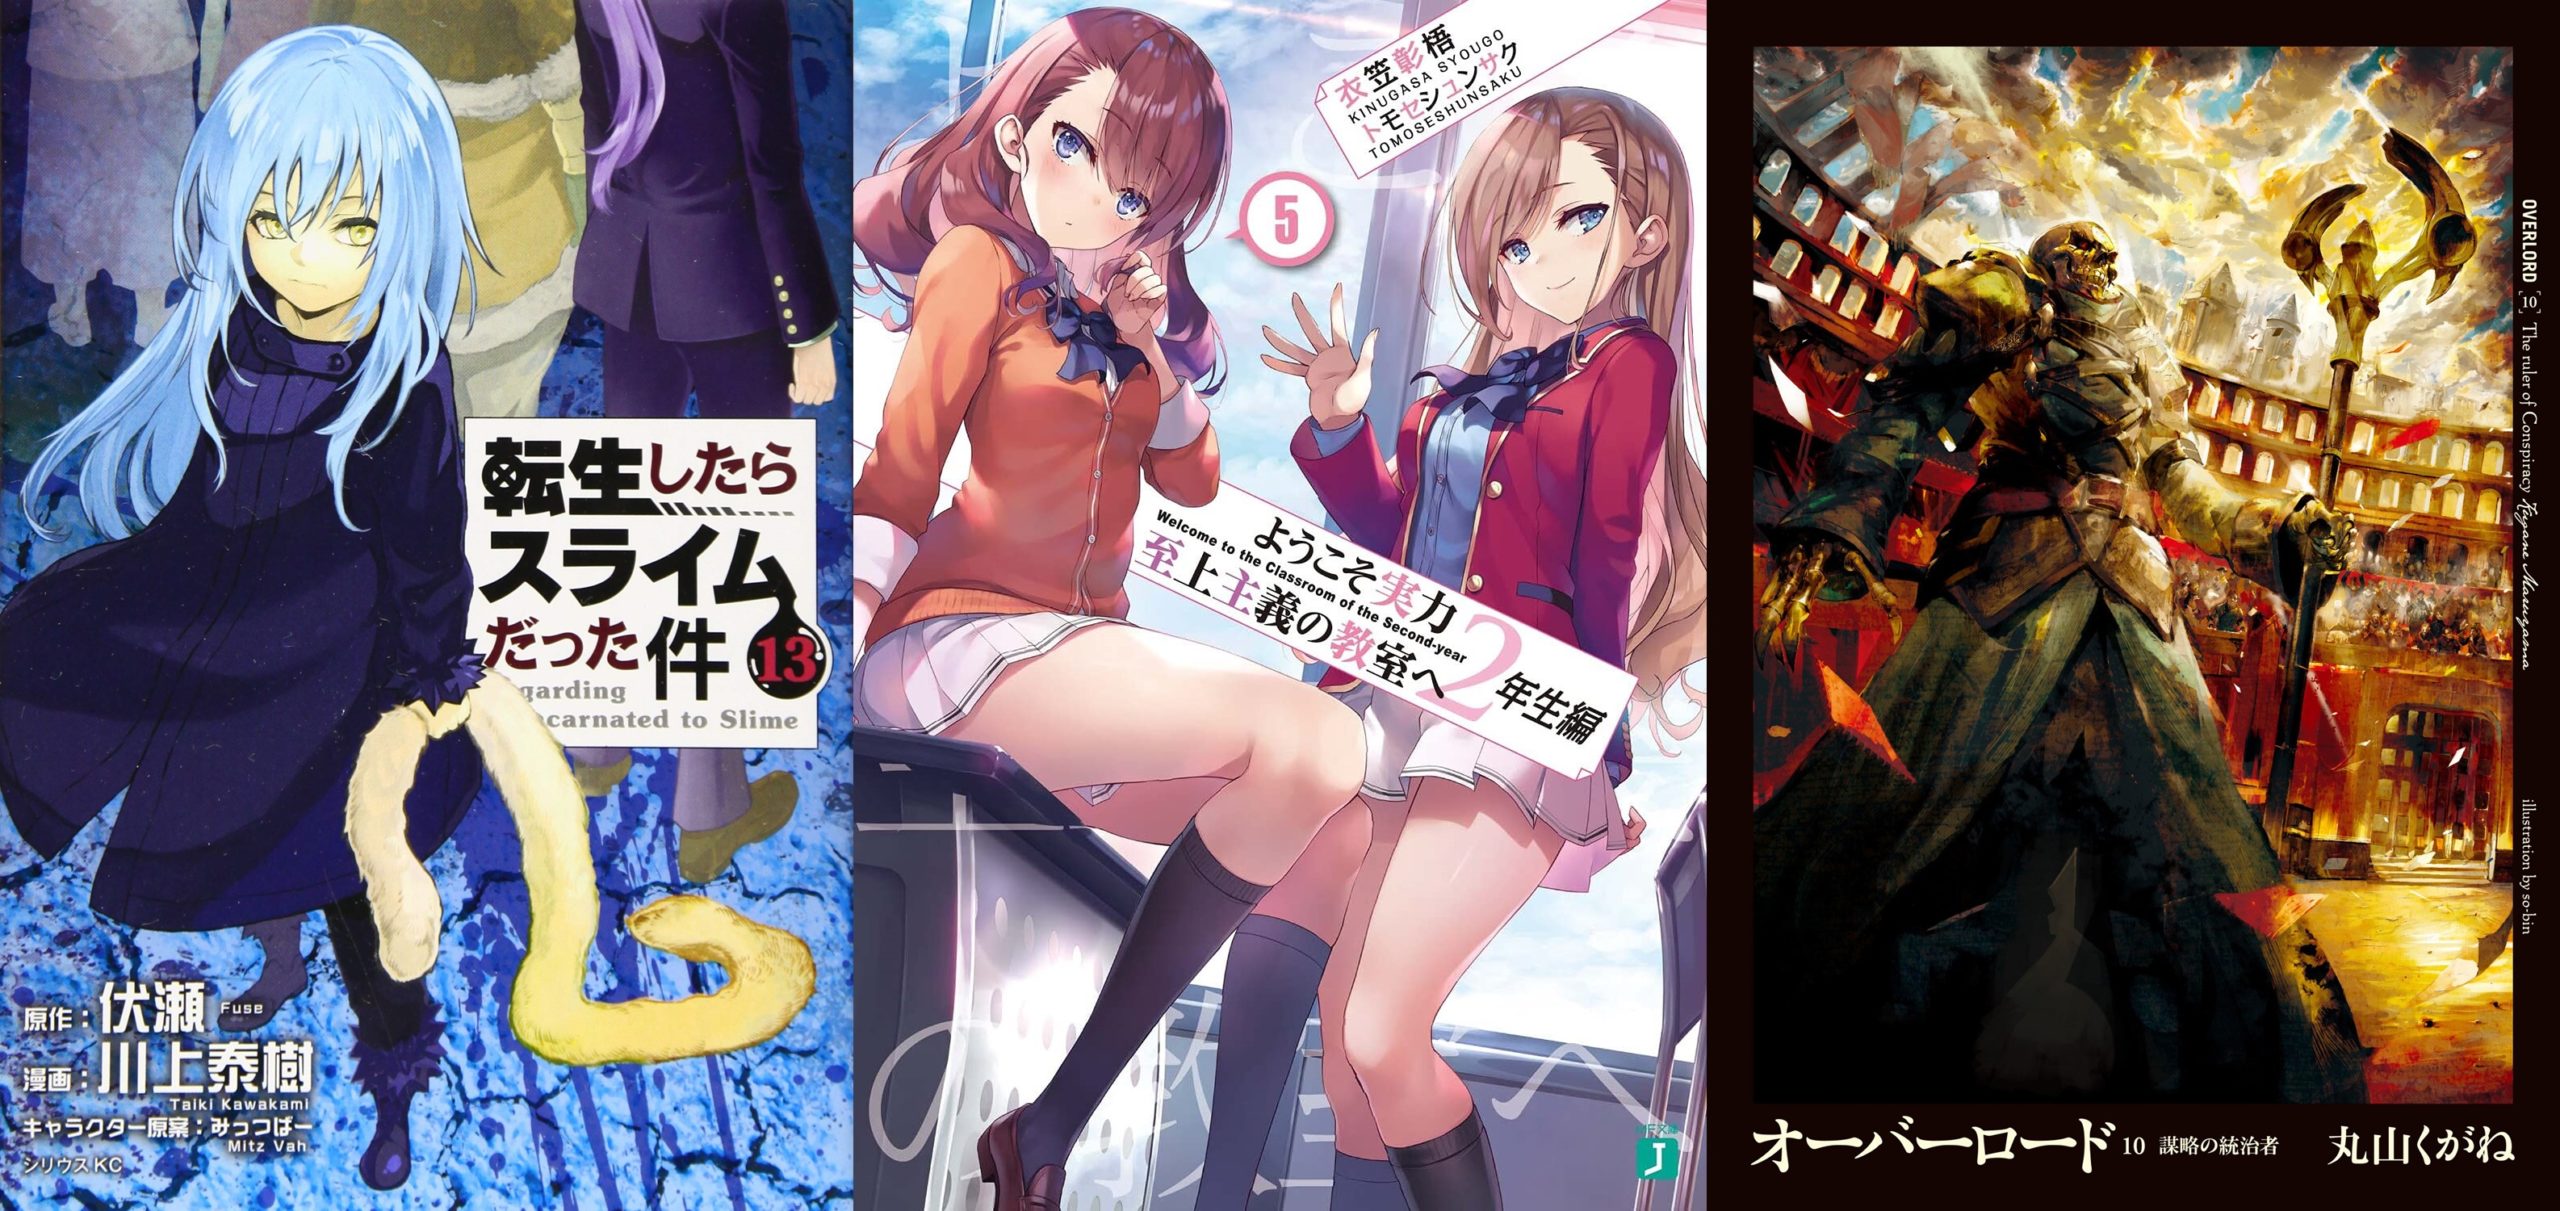 IntoxiAnime - Página 281 de 988 - Tudo sobre animes, tops, light novels,  mangas, notícias, rankings e vendas.